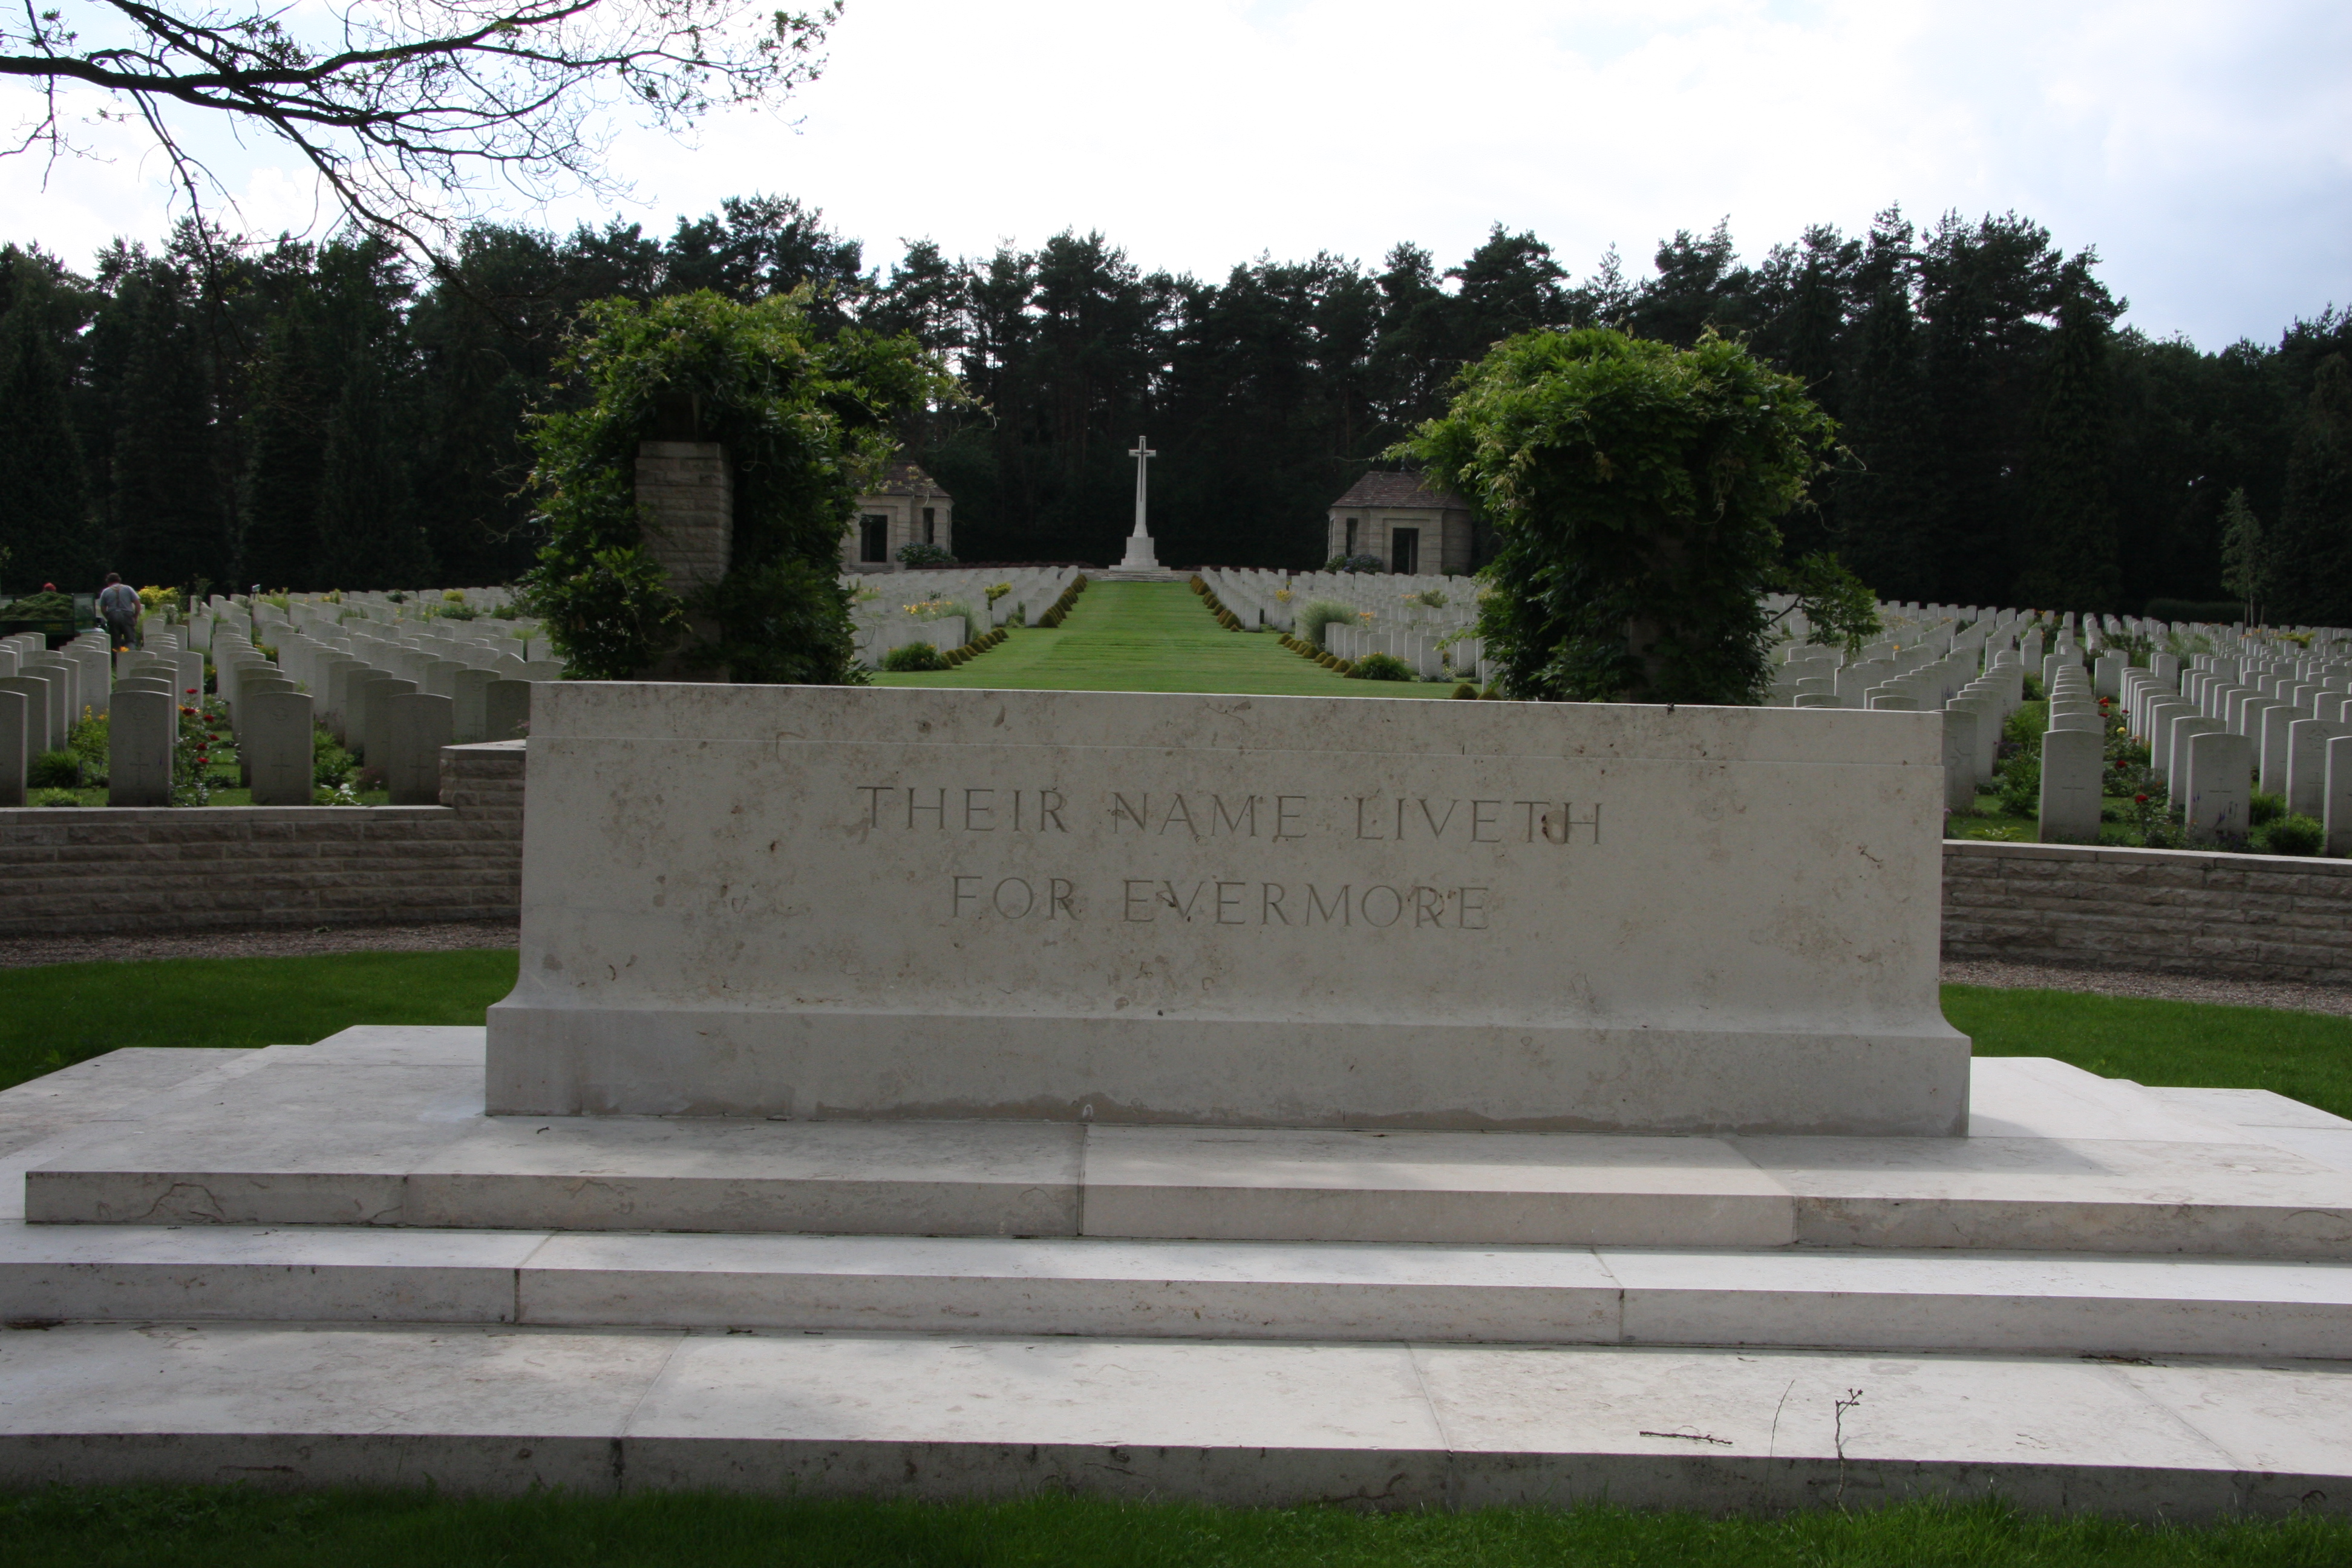 English war cemetery in Becklingen